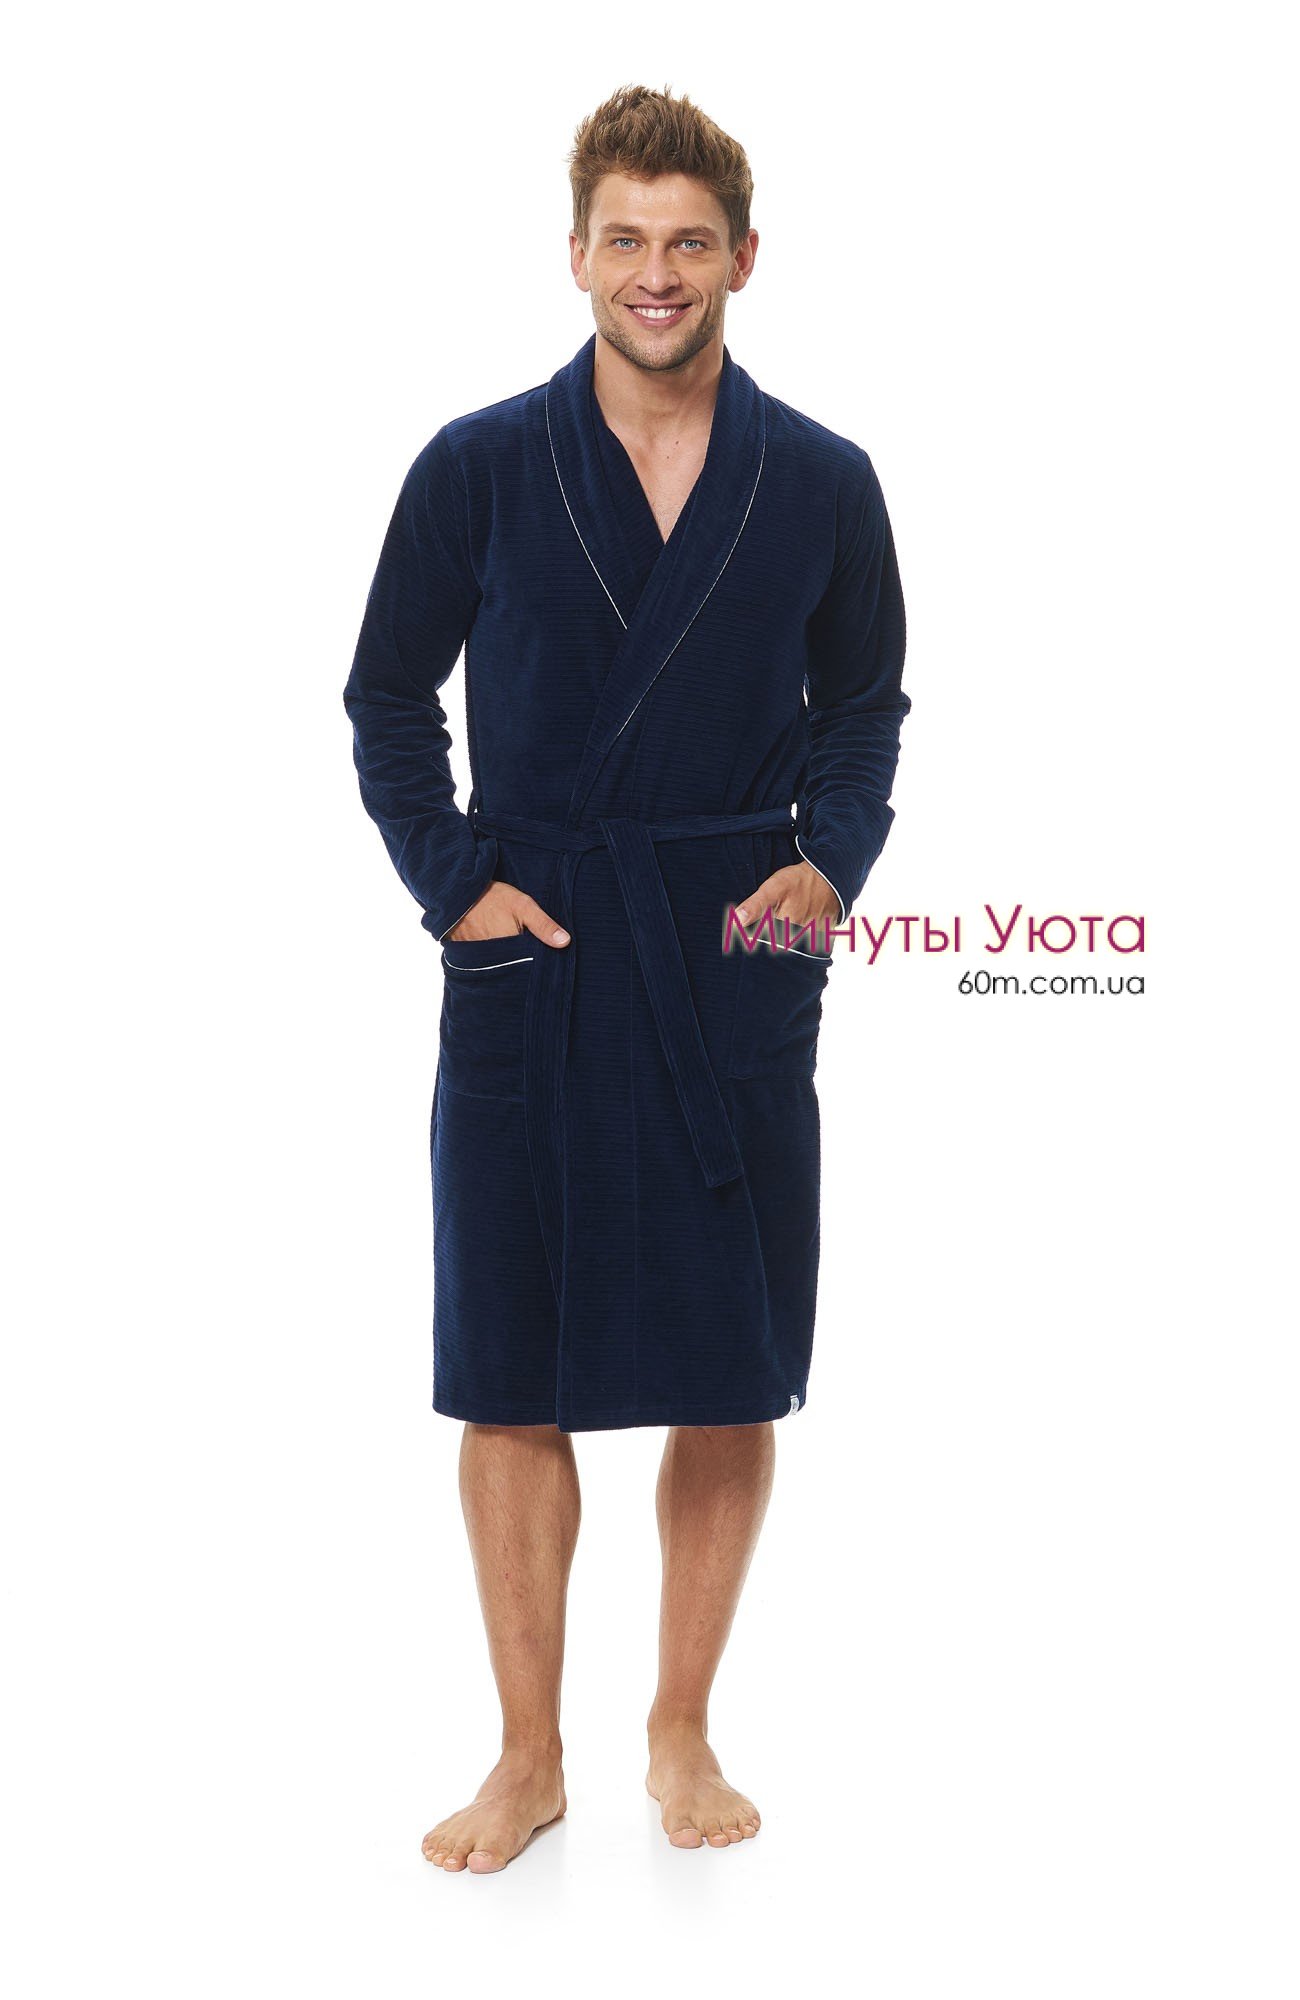 Мужской халат из фактурного велюра в синем цвете Dobra Nochka